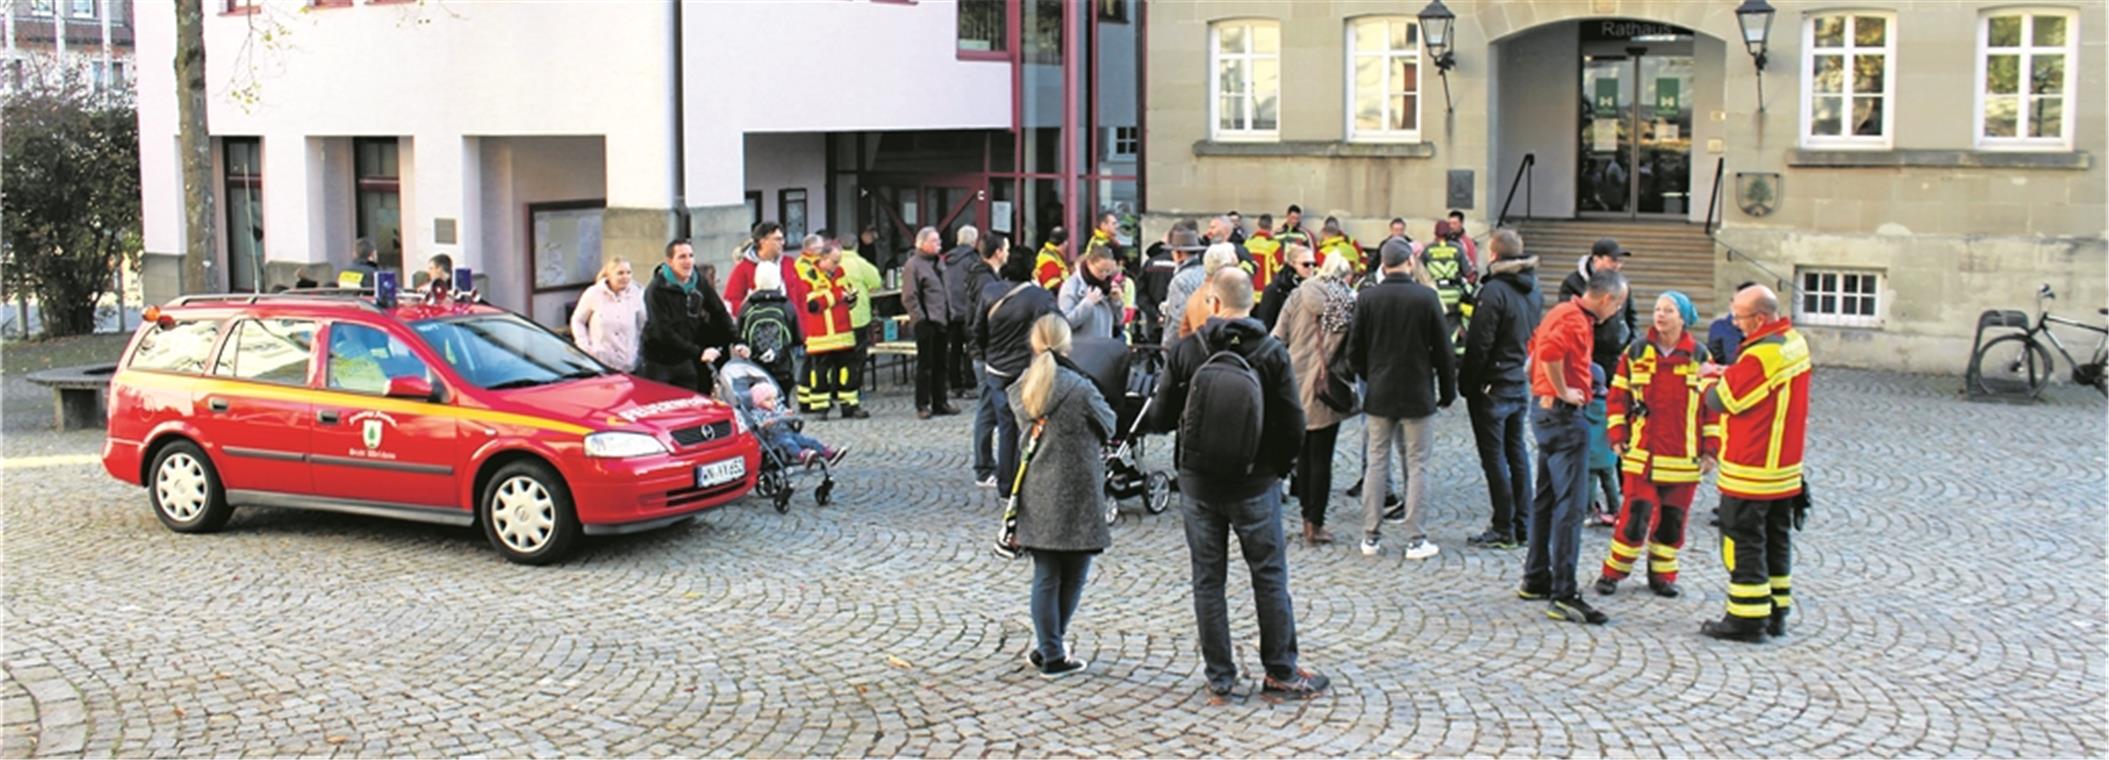 Vor dem Rathaus in Welzheim haben Feuerwehrkollegen Steffi Saul nach ihrem 300-Kilometer-Lauf einen Empfang bereitet.Fotos: M. Ellwanger